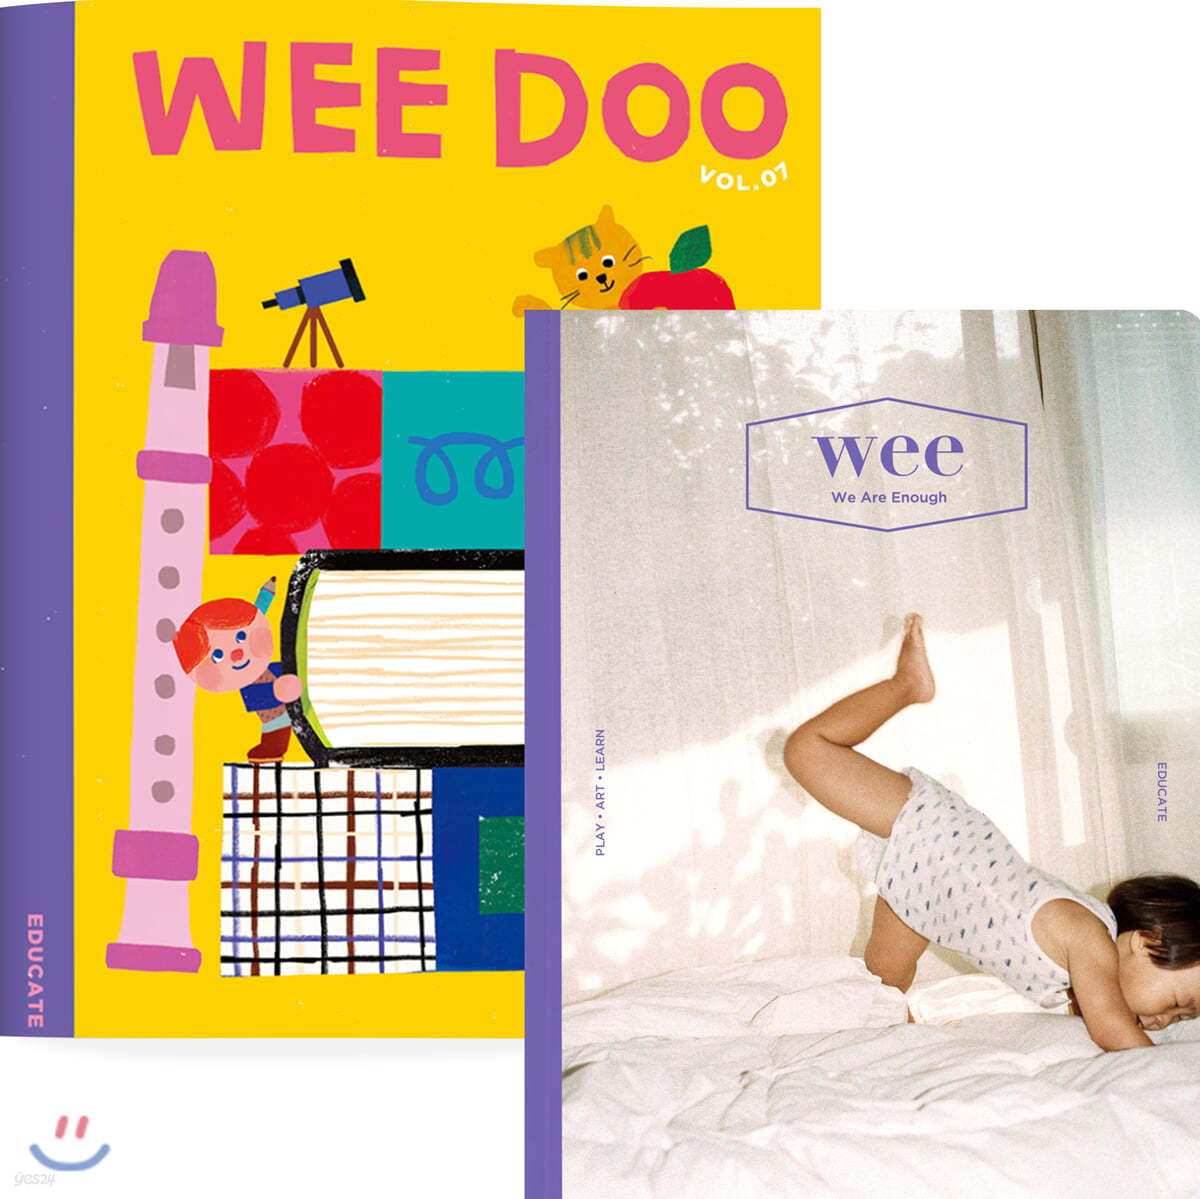 위매거진 WEE Magazine Vol.18 + WEE DOO Vol.7